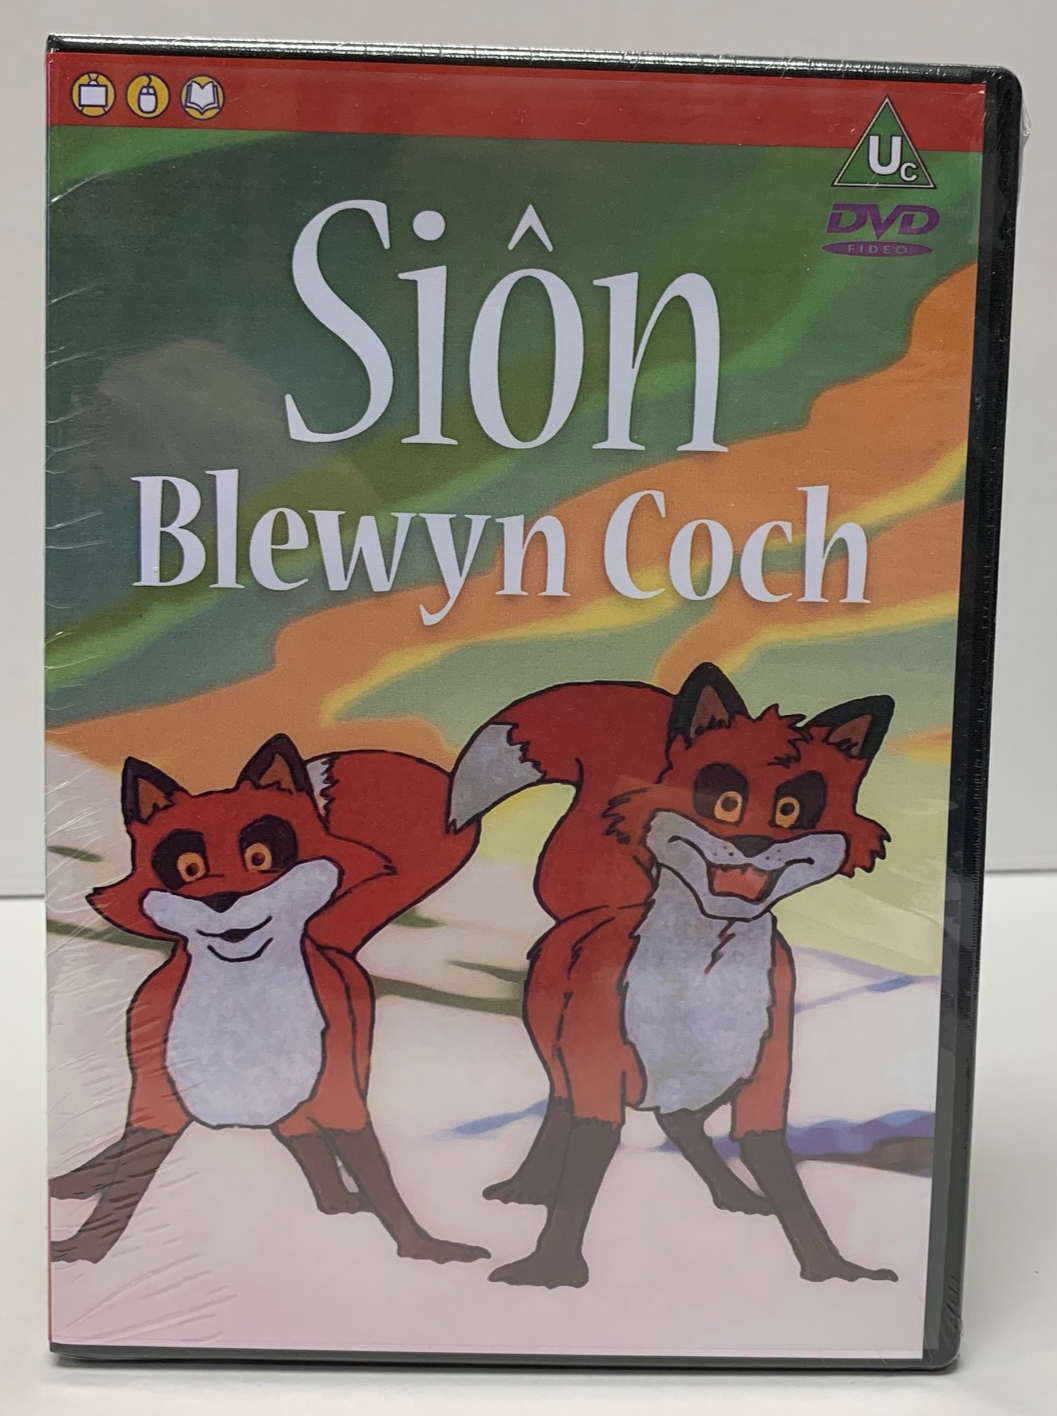 Sion Blewyn Coch